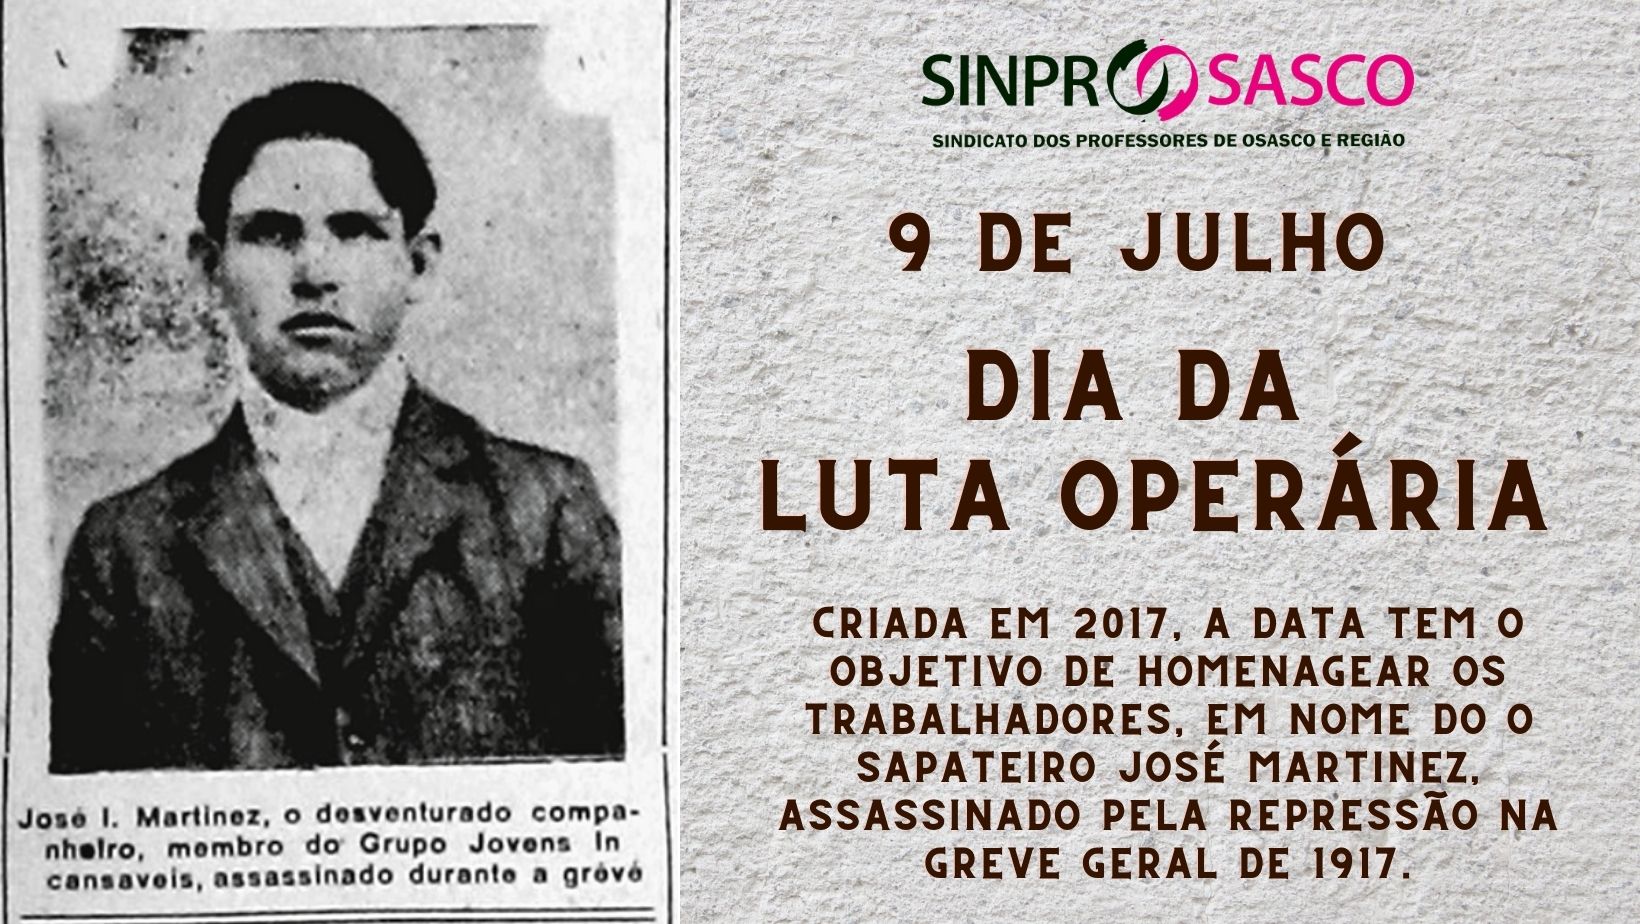 9 de JULHO: Dia da Luta Operária